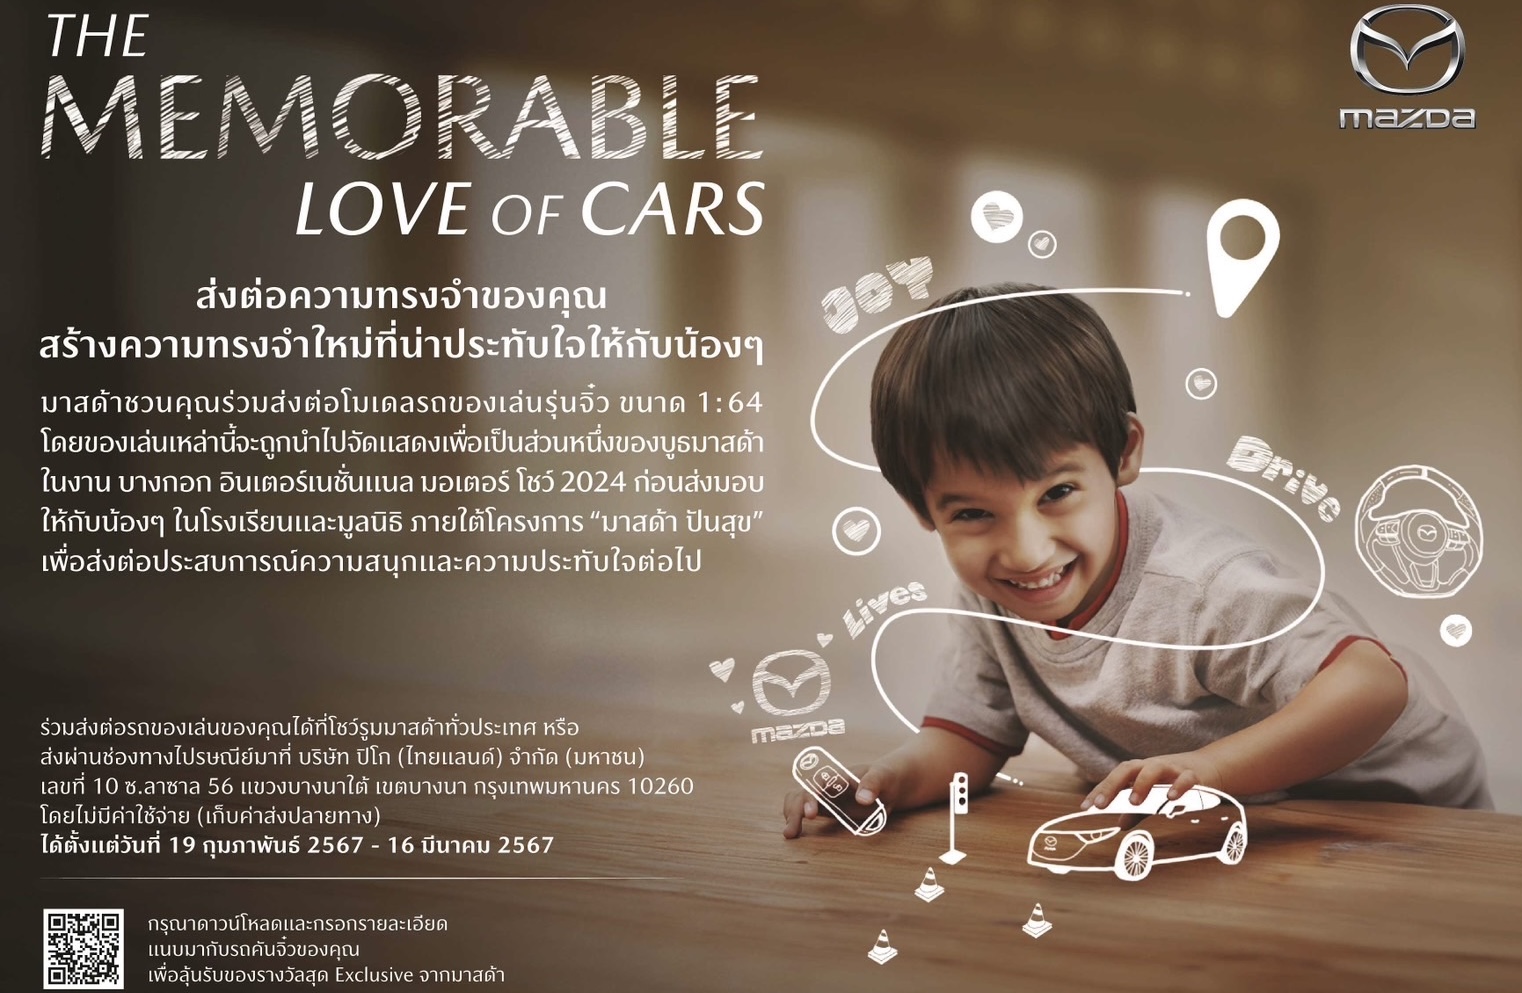 มาสด้าชวนคนไทยสละรถโมเดลของเล่นเติมฝันเยาวชนกับกิจกรรม “The Memorable Love of Cars”